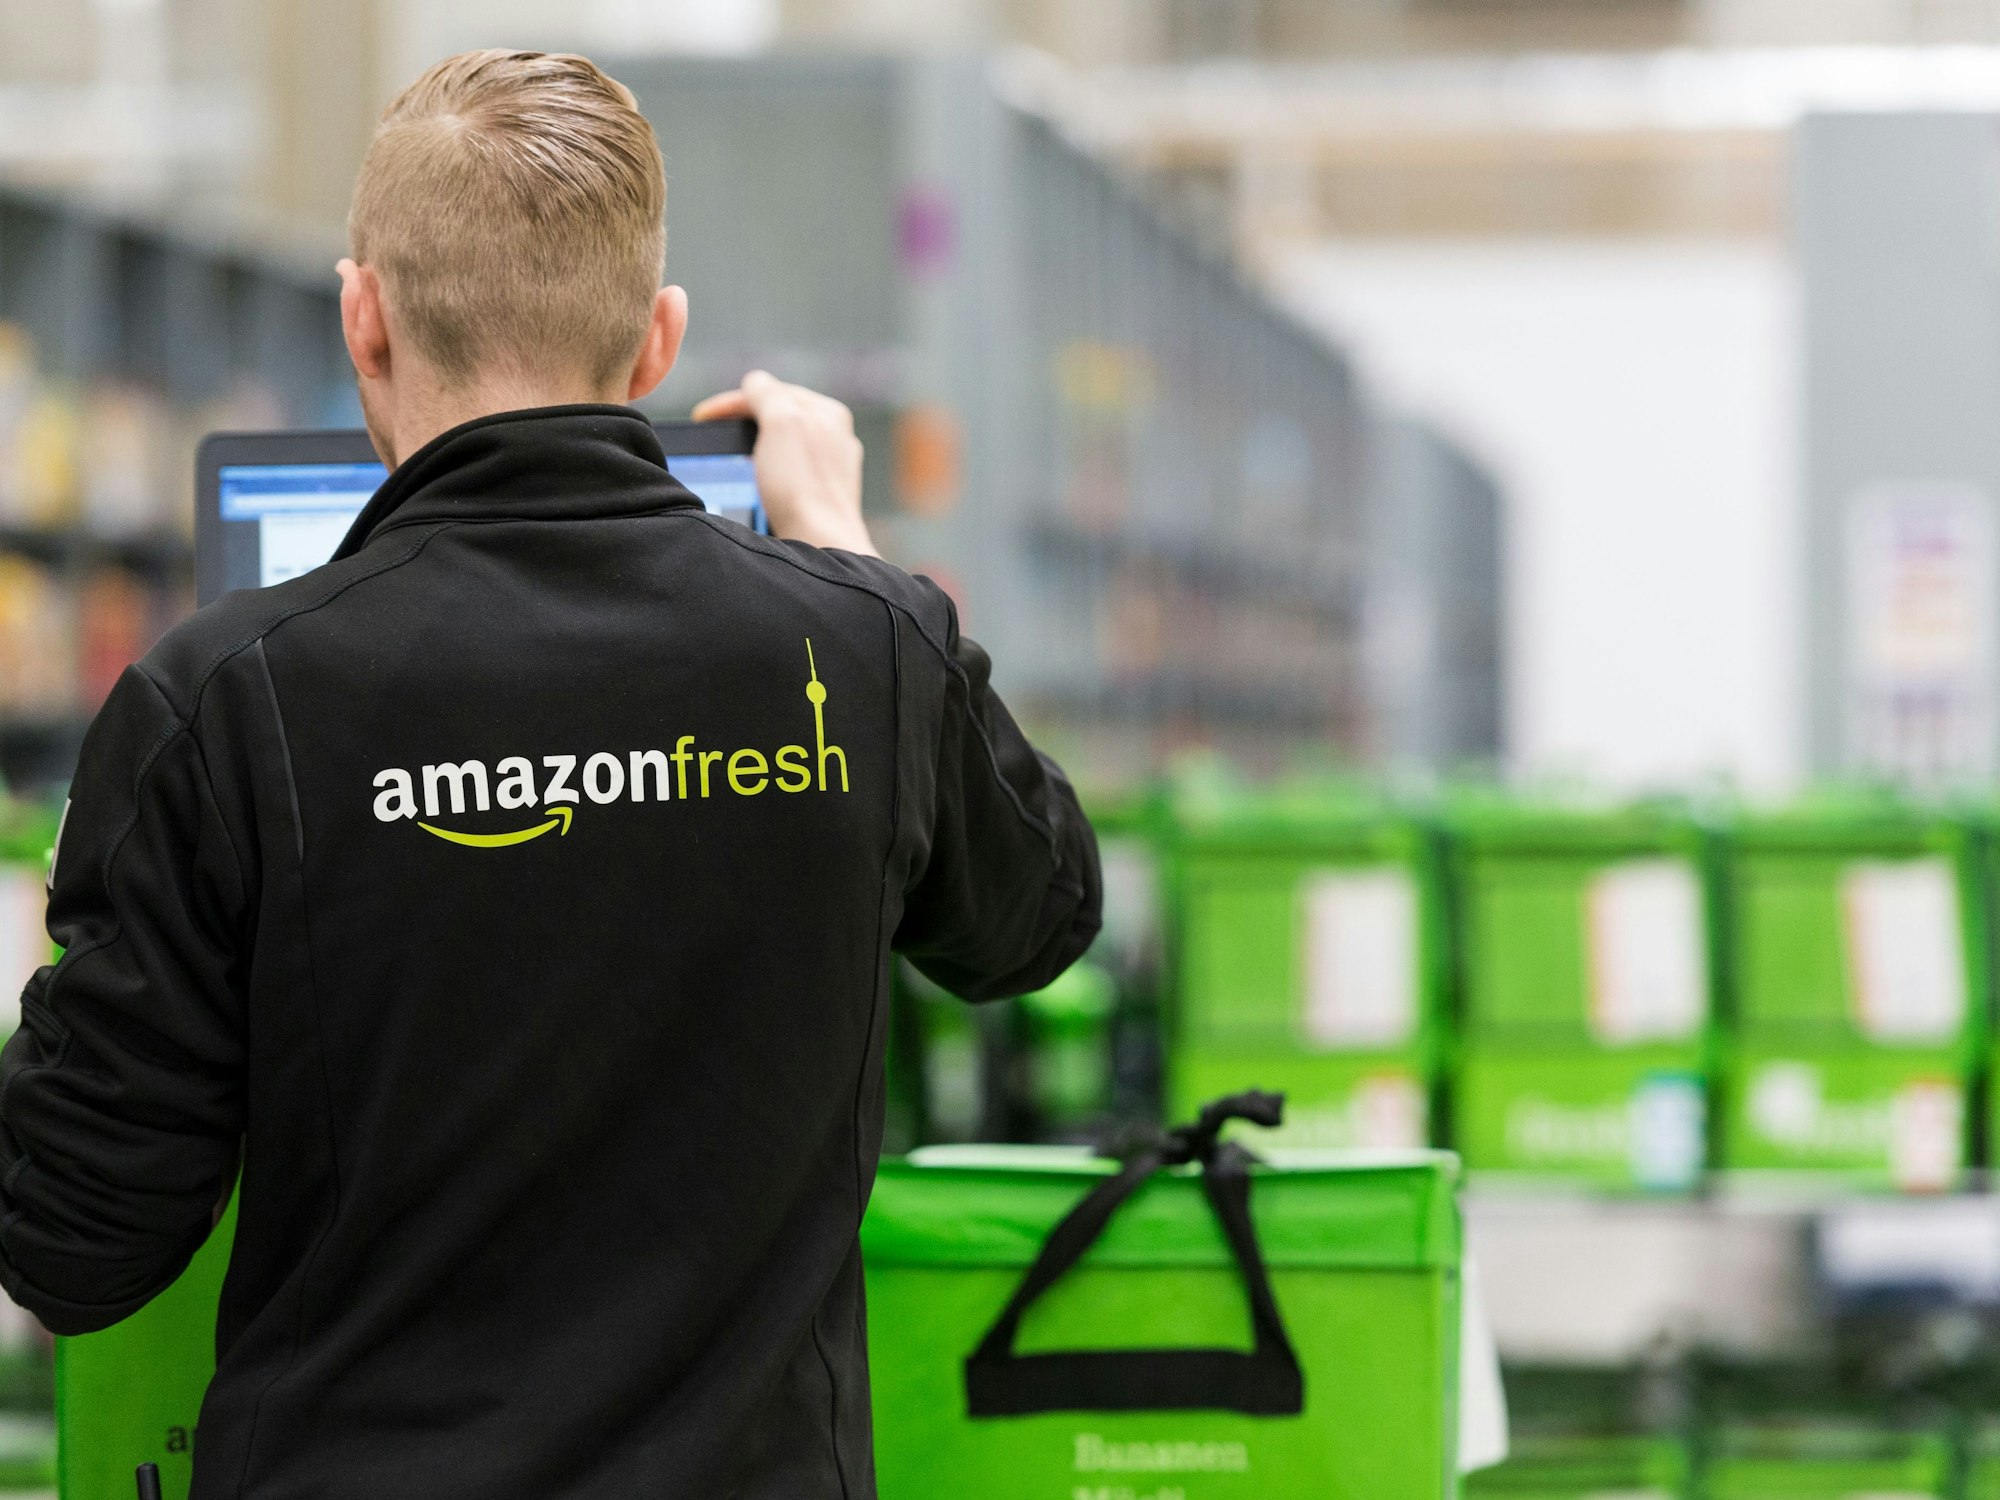 Ein Mitarbeiter des Lebensmittellieferdienstes Amazon Fresh, hier im Juli 2017 in Berlin.